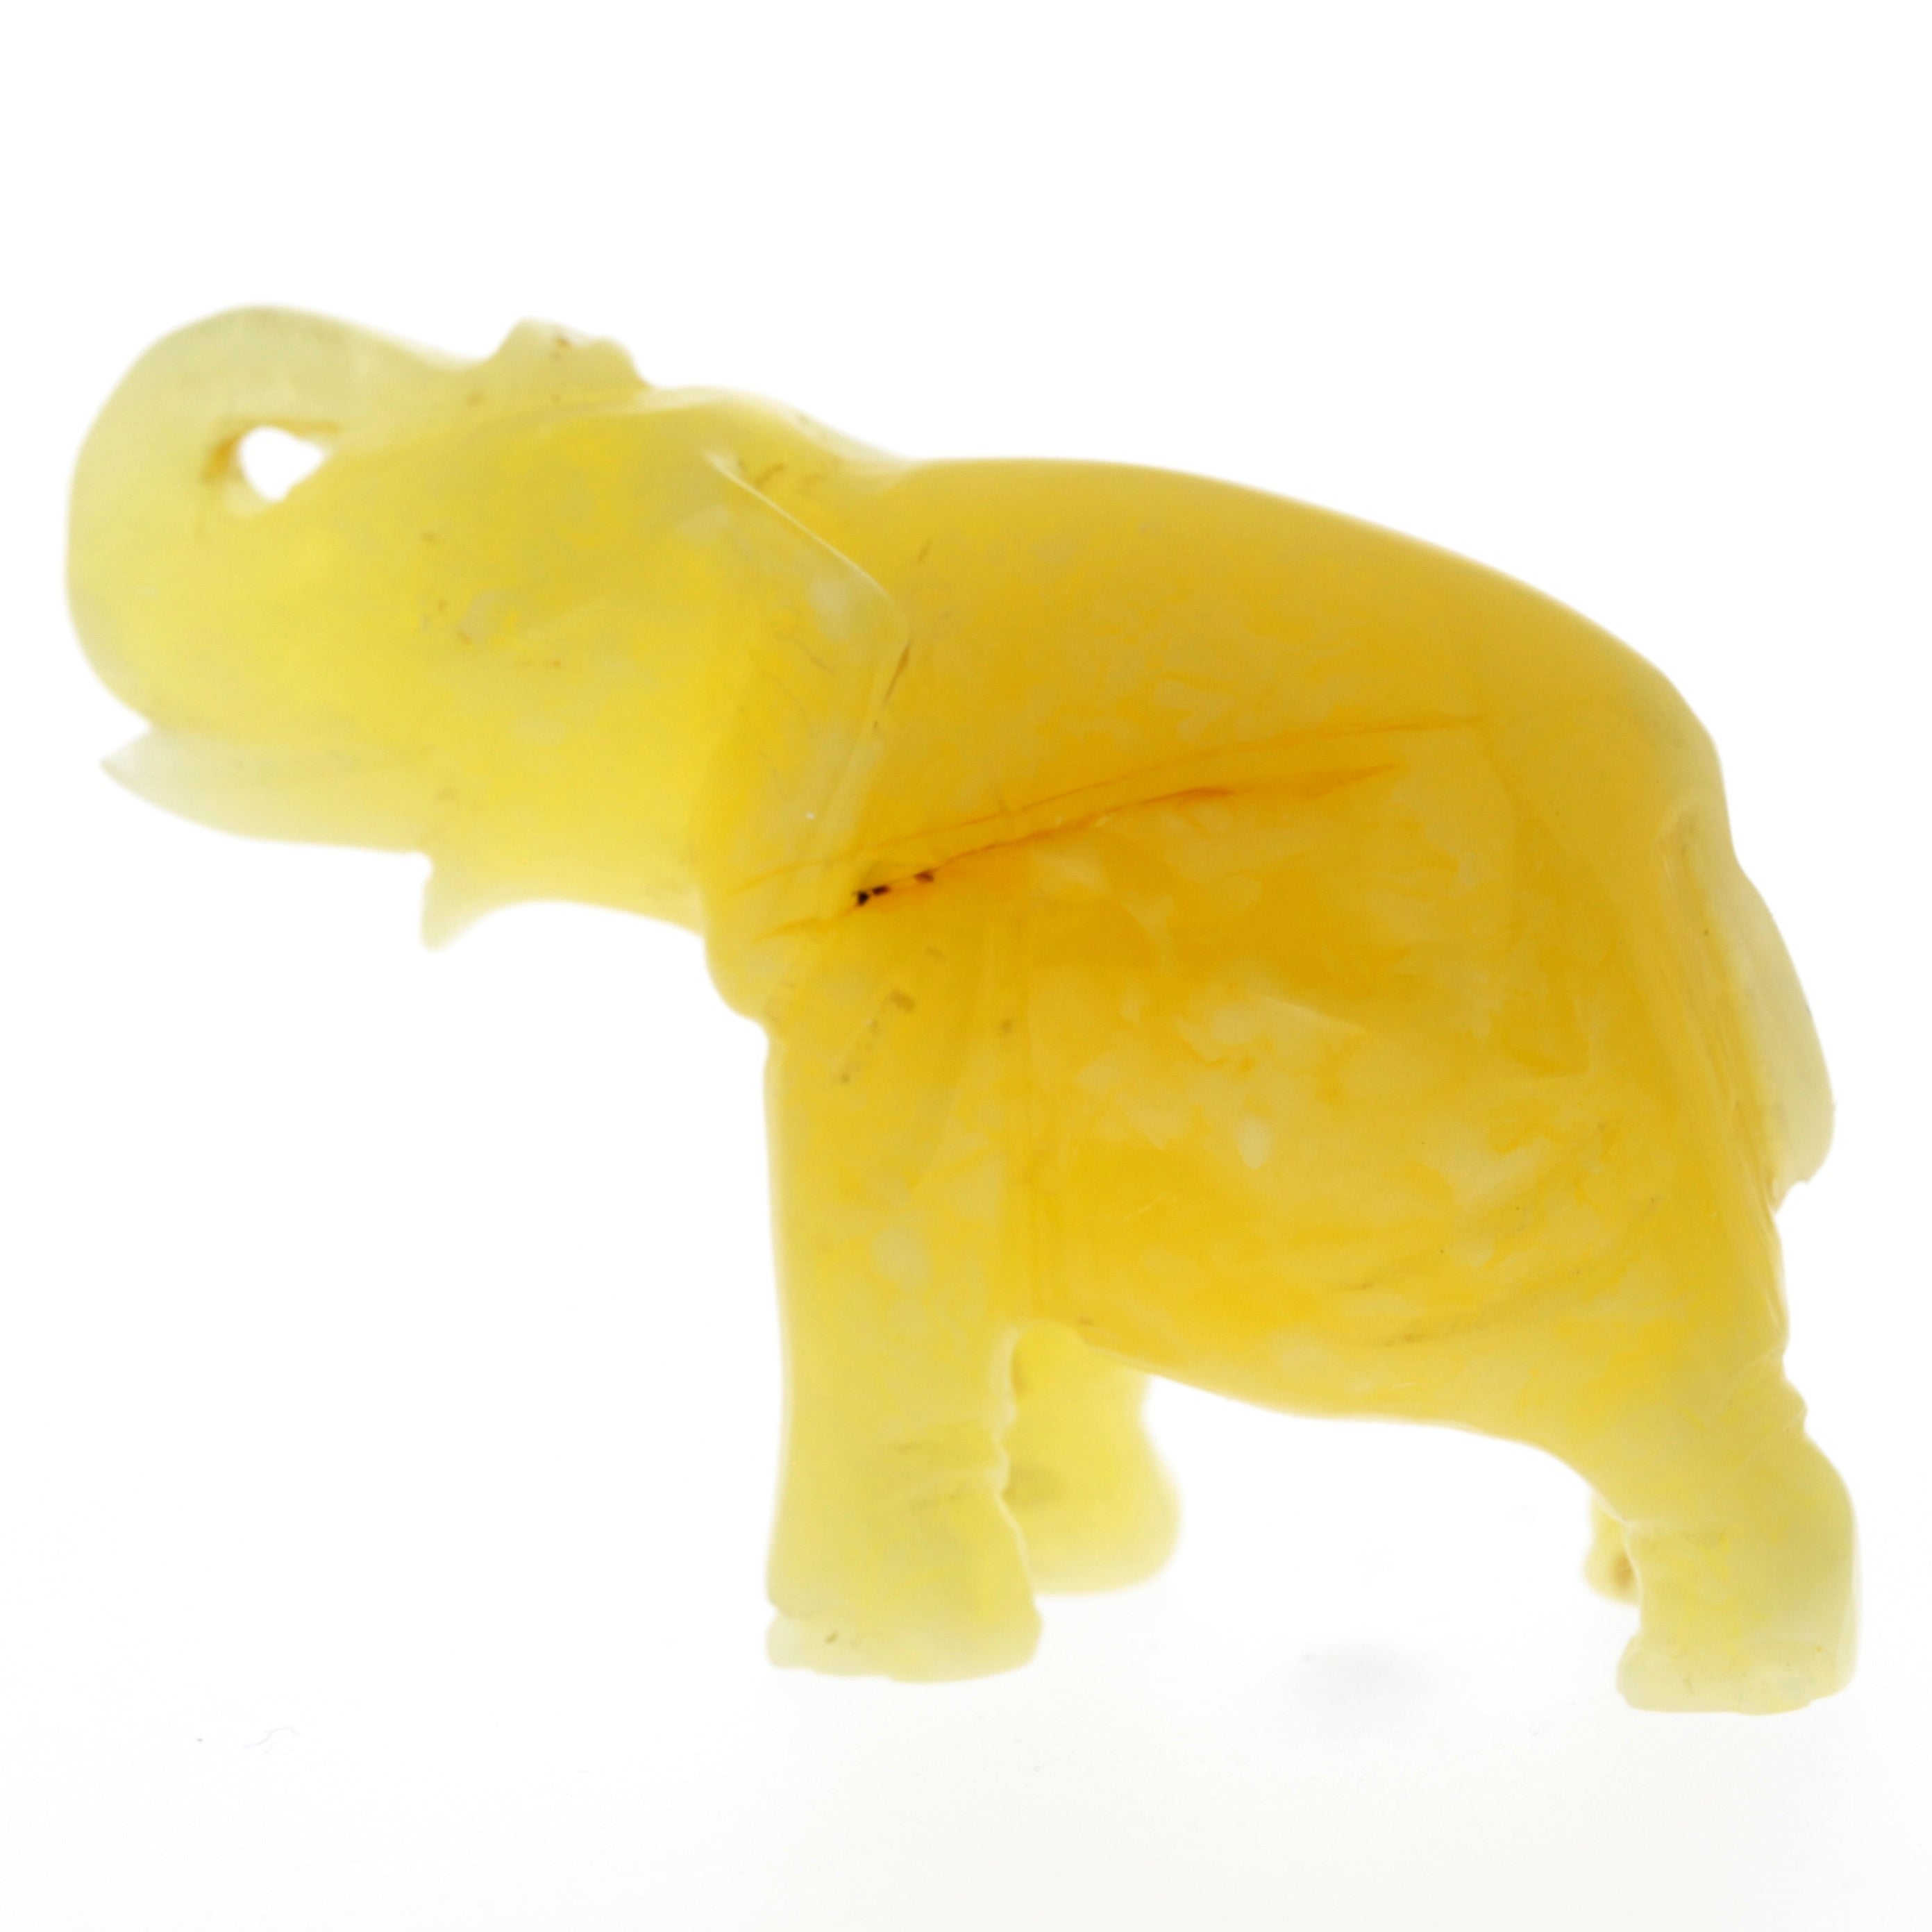 Figurine Superb Quality Handmade Natural Carved Elephant made of Genuine Baltic Amber - CRV93